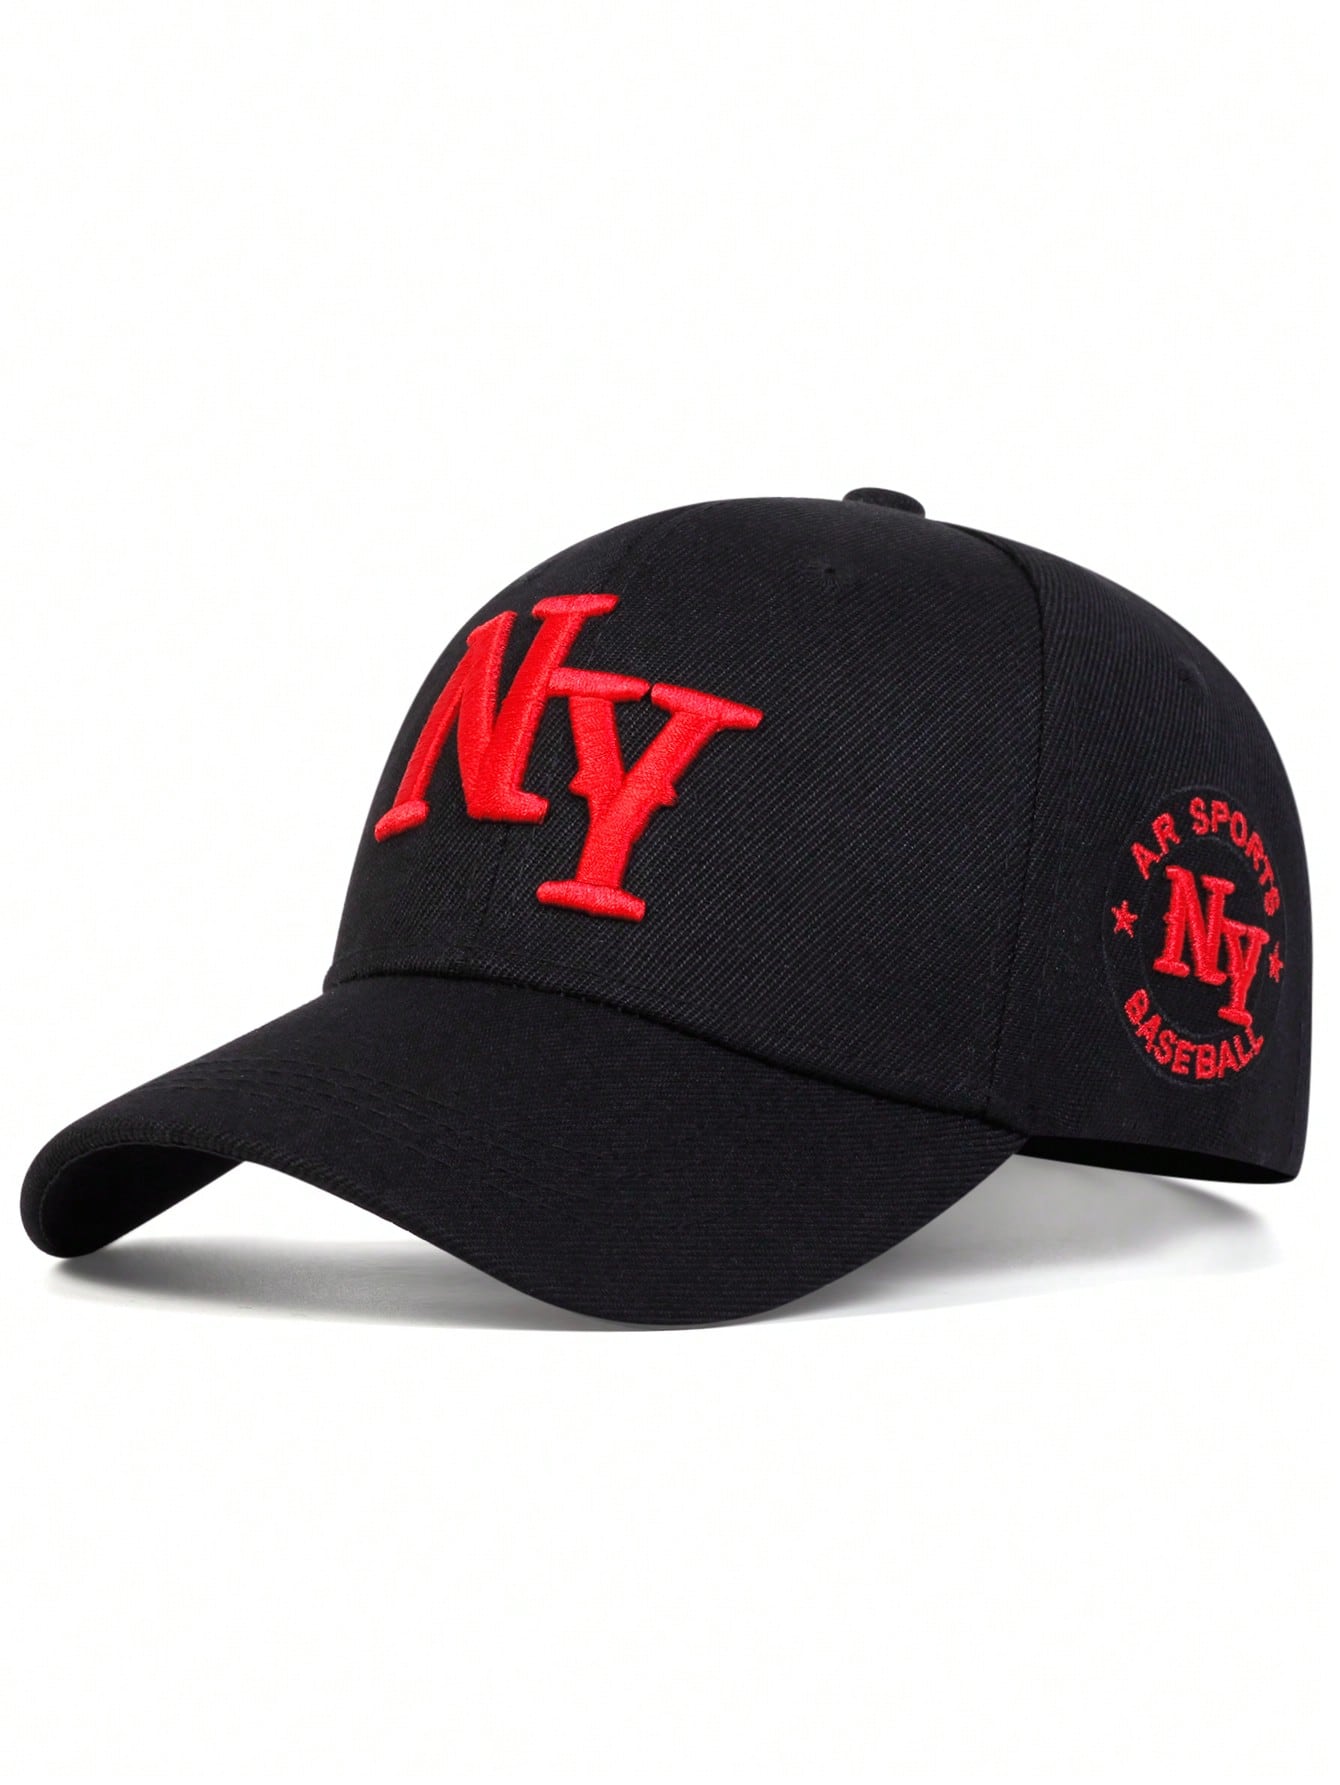 1 шт. мужская бейсболка с вышивкой букв «Нью-Йорк», черный однотонная бейсболка женская летняя солнцезащитная шляпа с вышивкой улыбки повседневная регулируемая мужская снэпбэк кепка бейсболка д